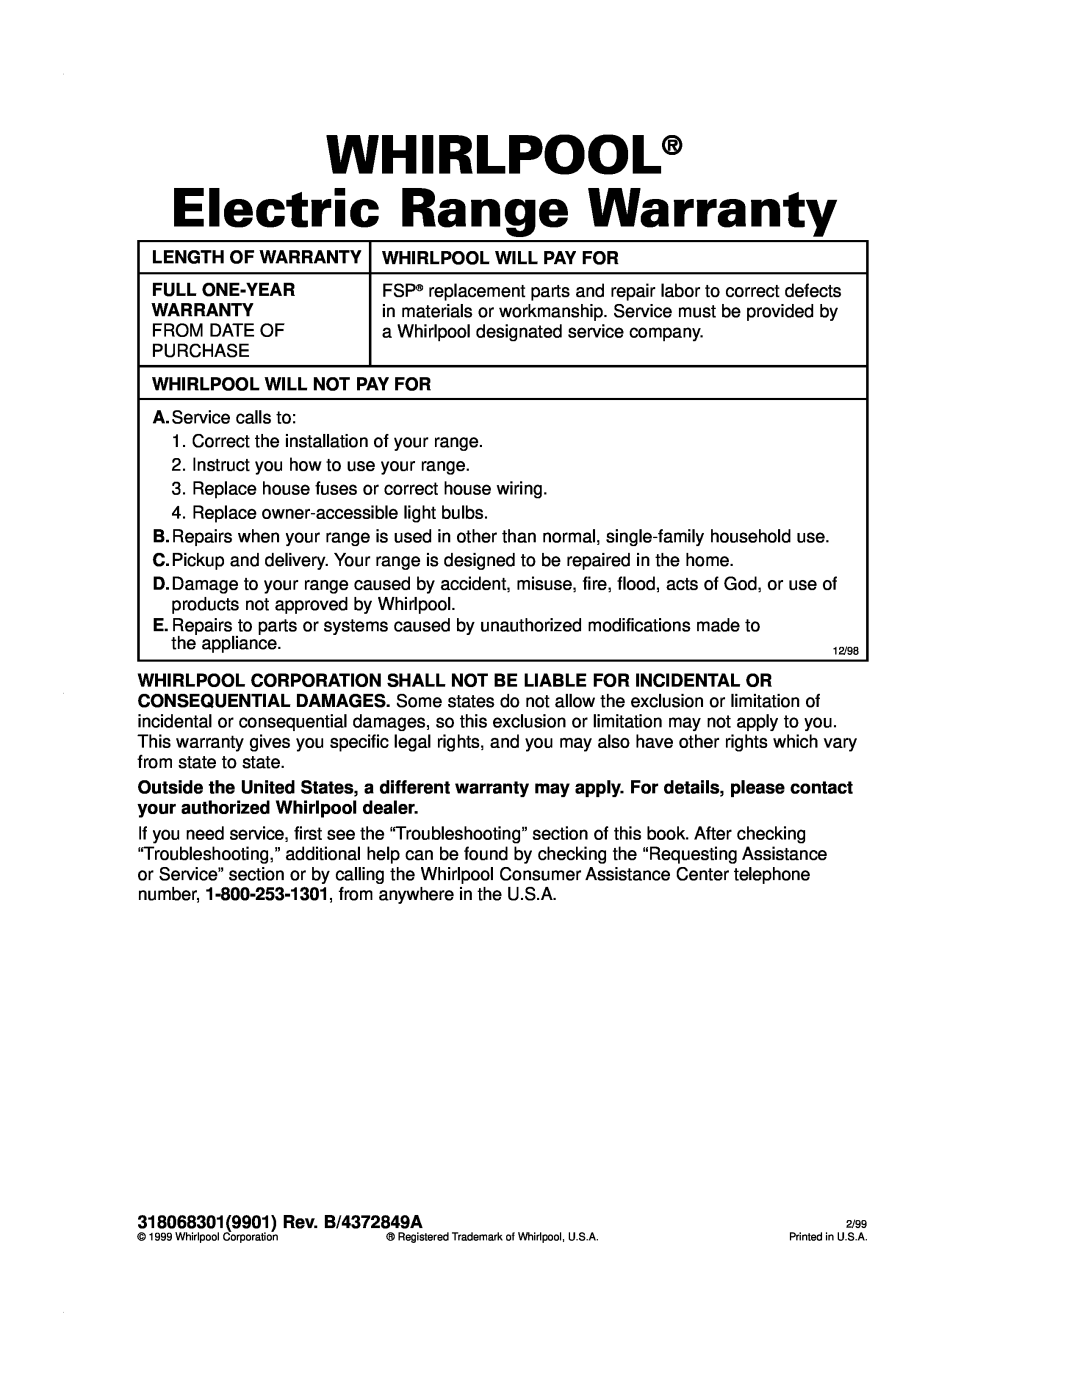 Whirlpool RF4700XE warranty WHIRLPOOL Electric Range Warranty 